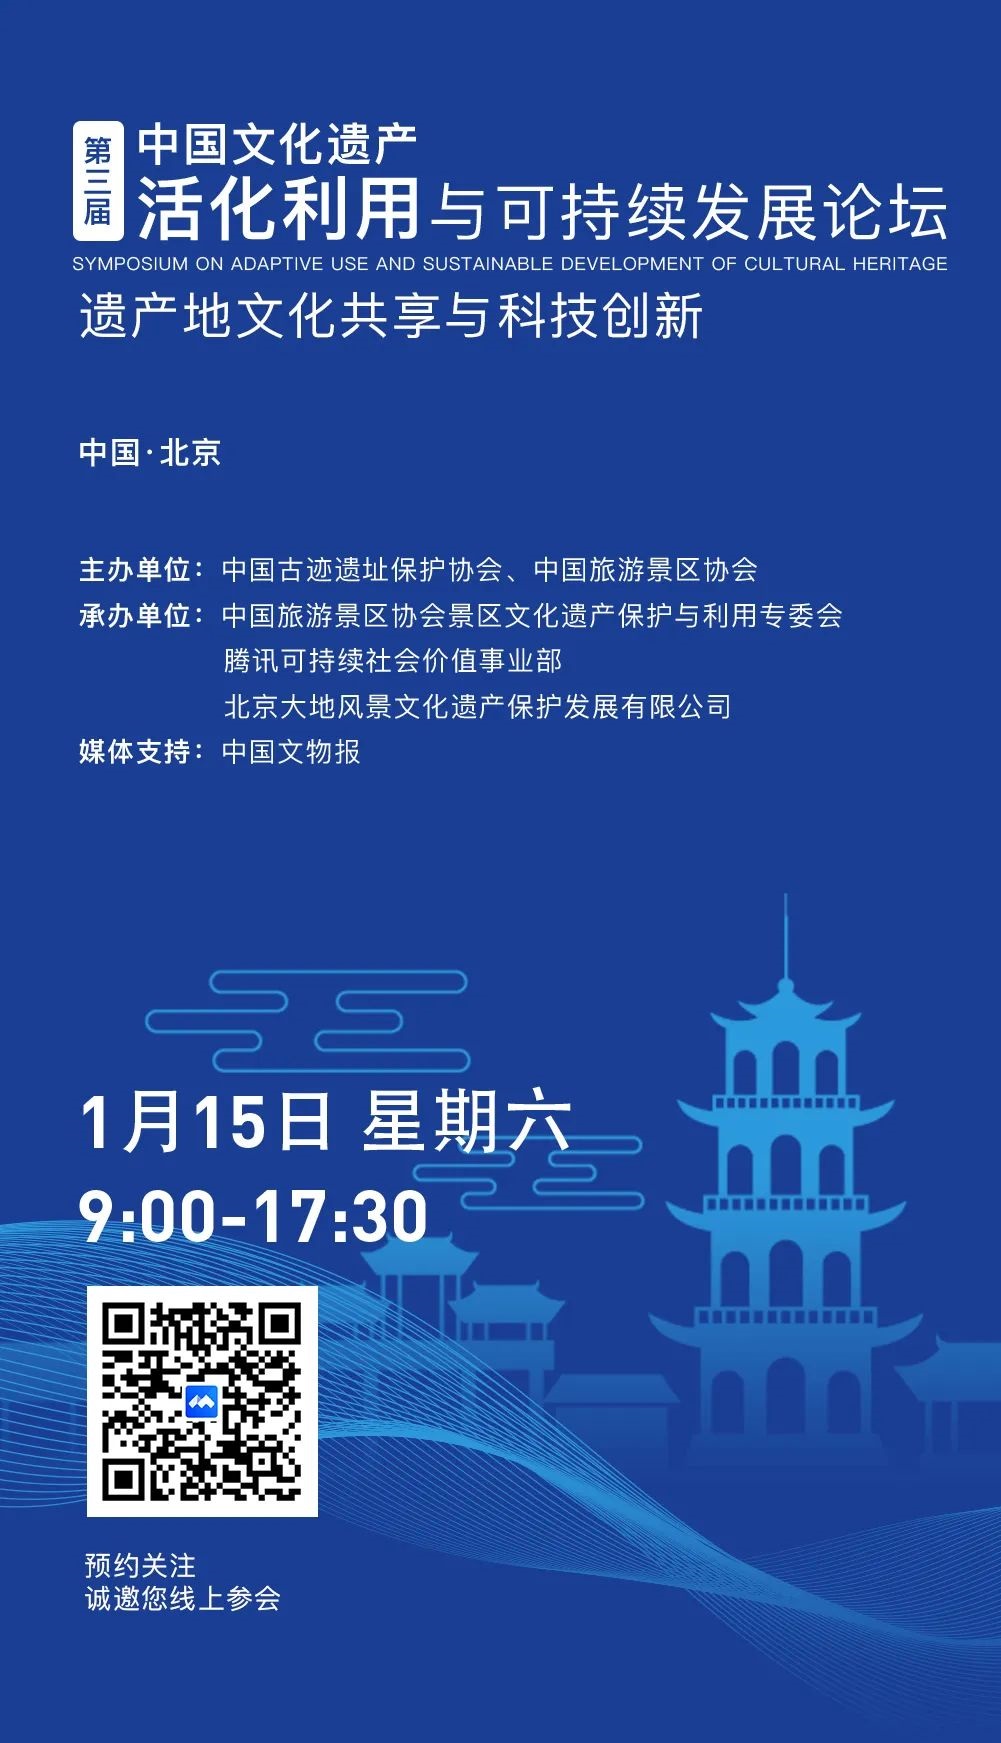 「论坛预告」第三届中国文化遗产活化利用与可持续发展论坛即将开幕